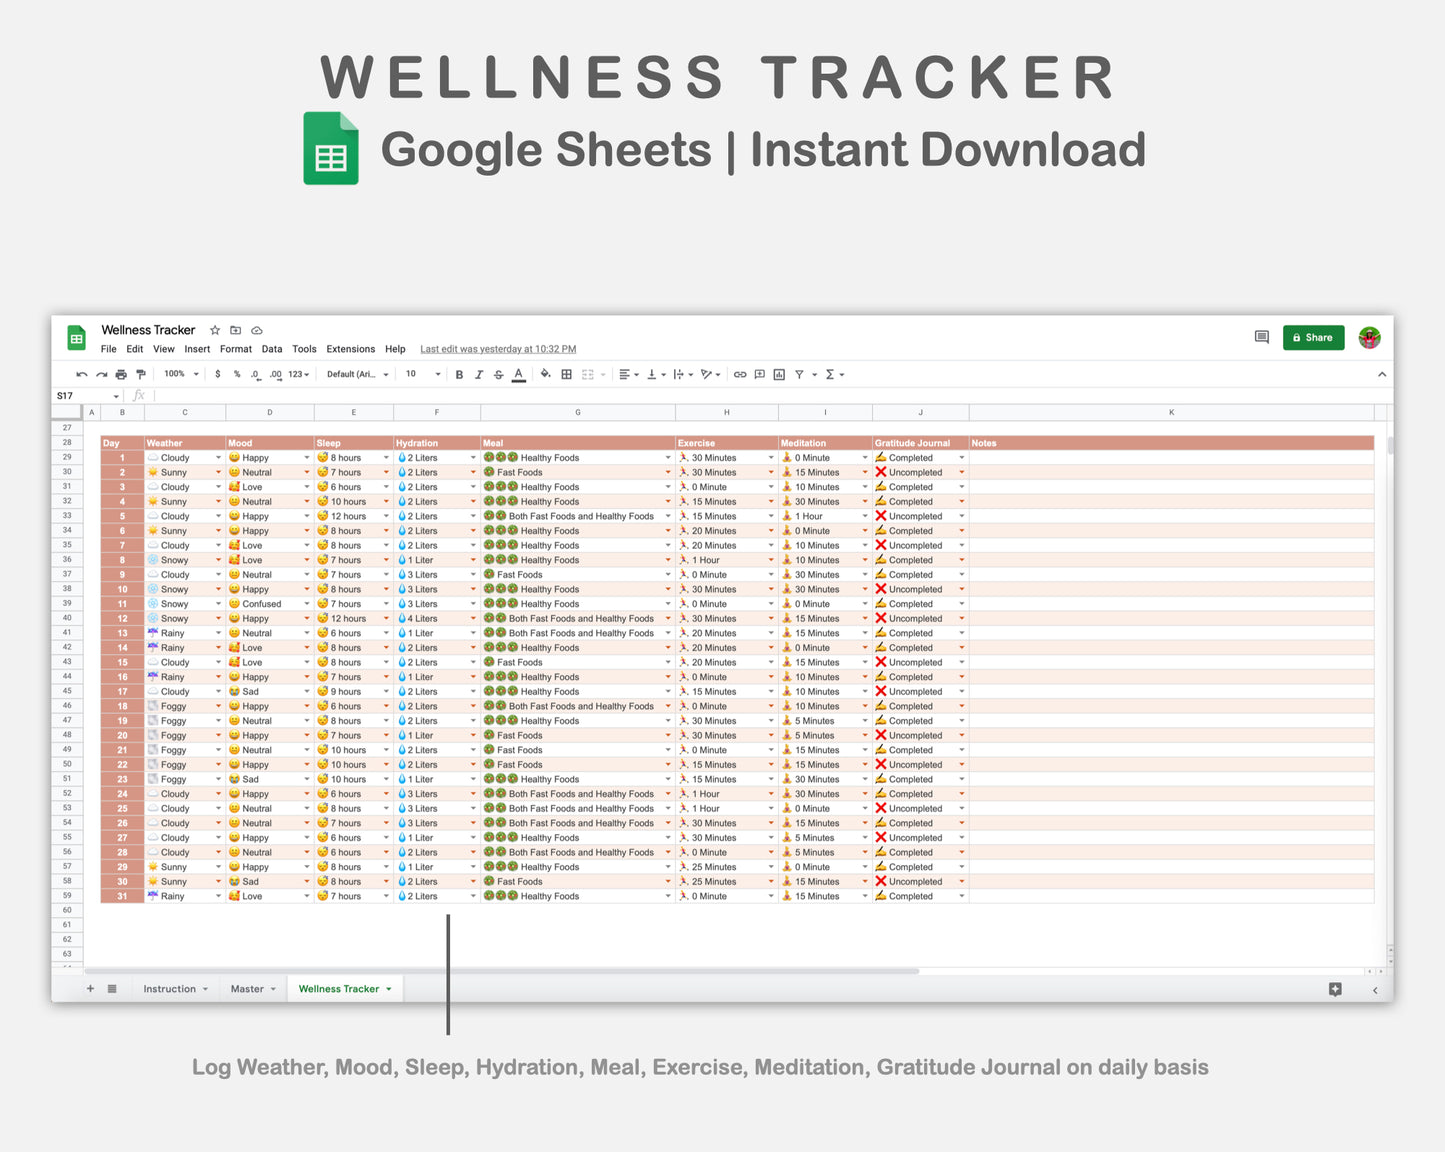 Google Sheets - Wellness Tracker  - Neutral